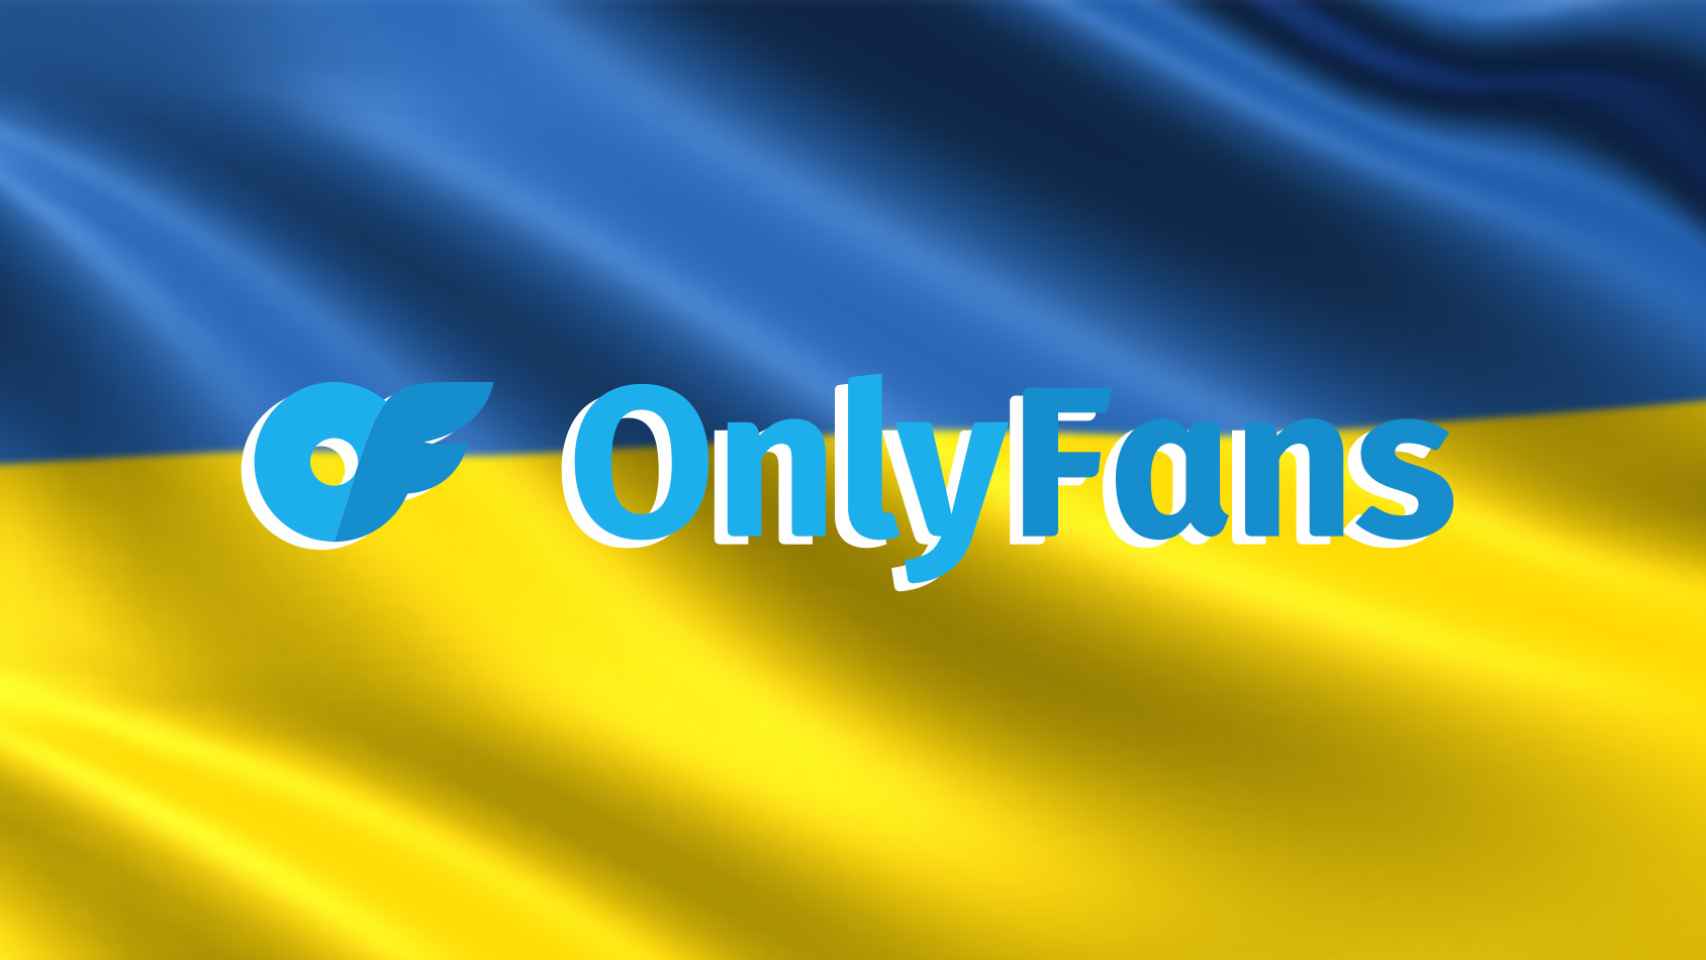 Logo de OnlyFans junto al de la bandera de Ucrania